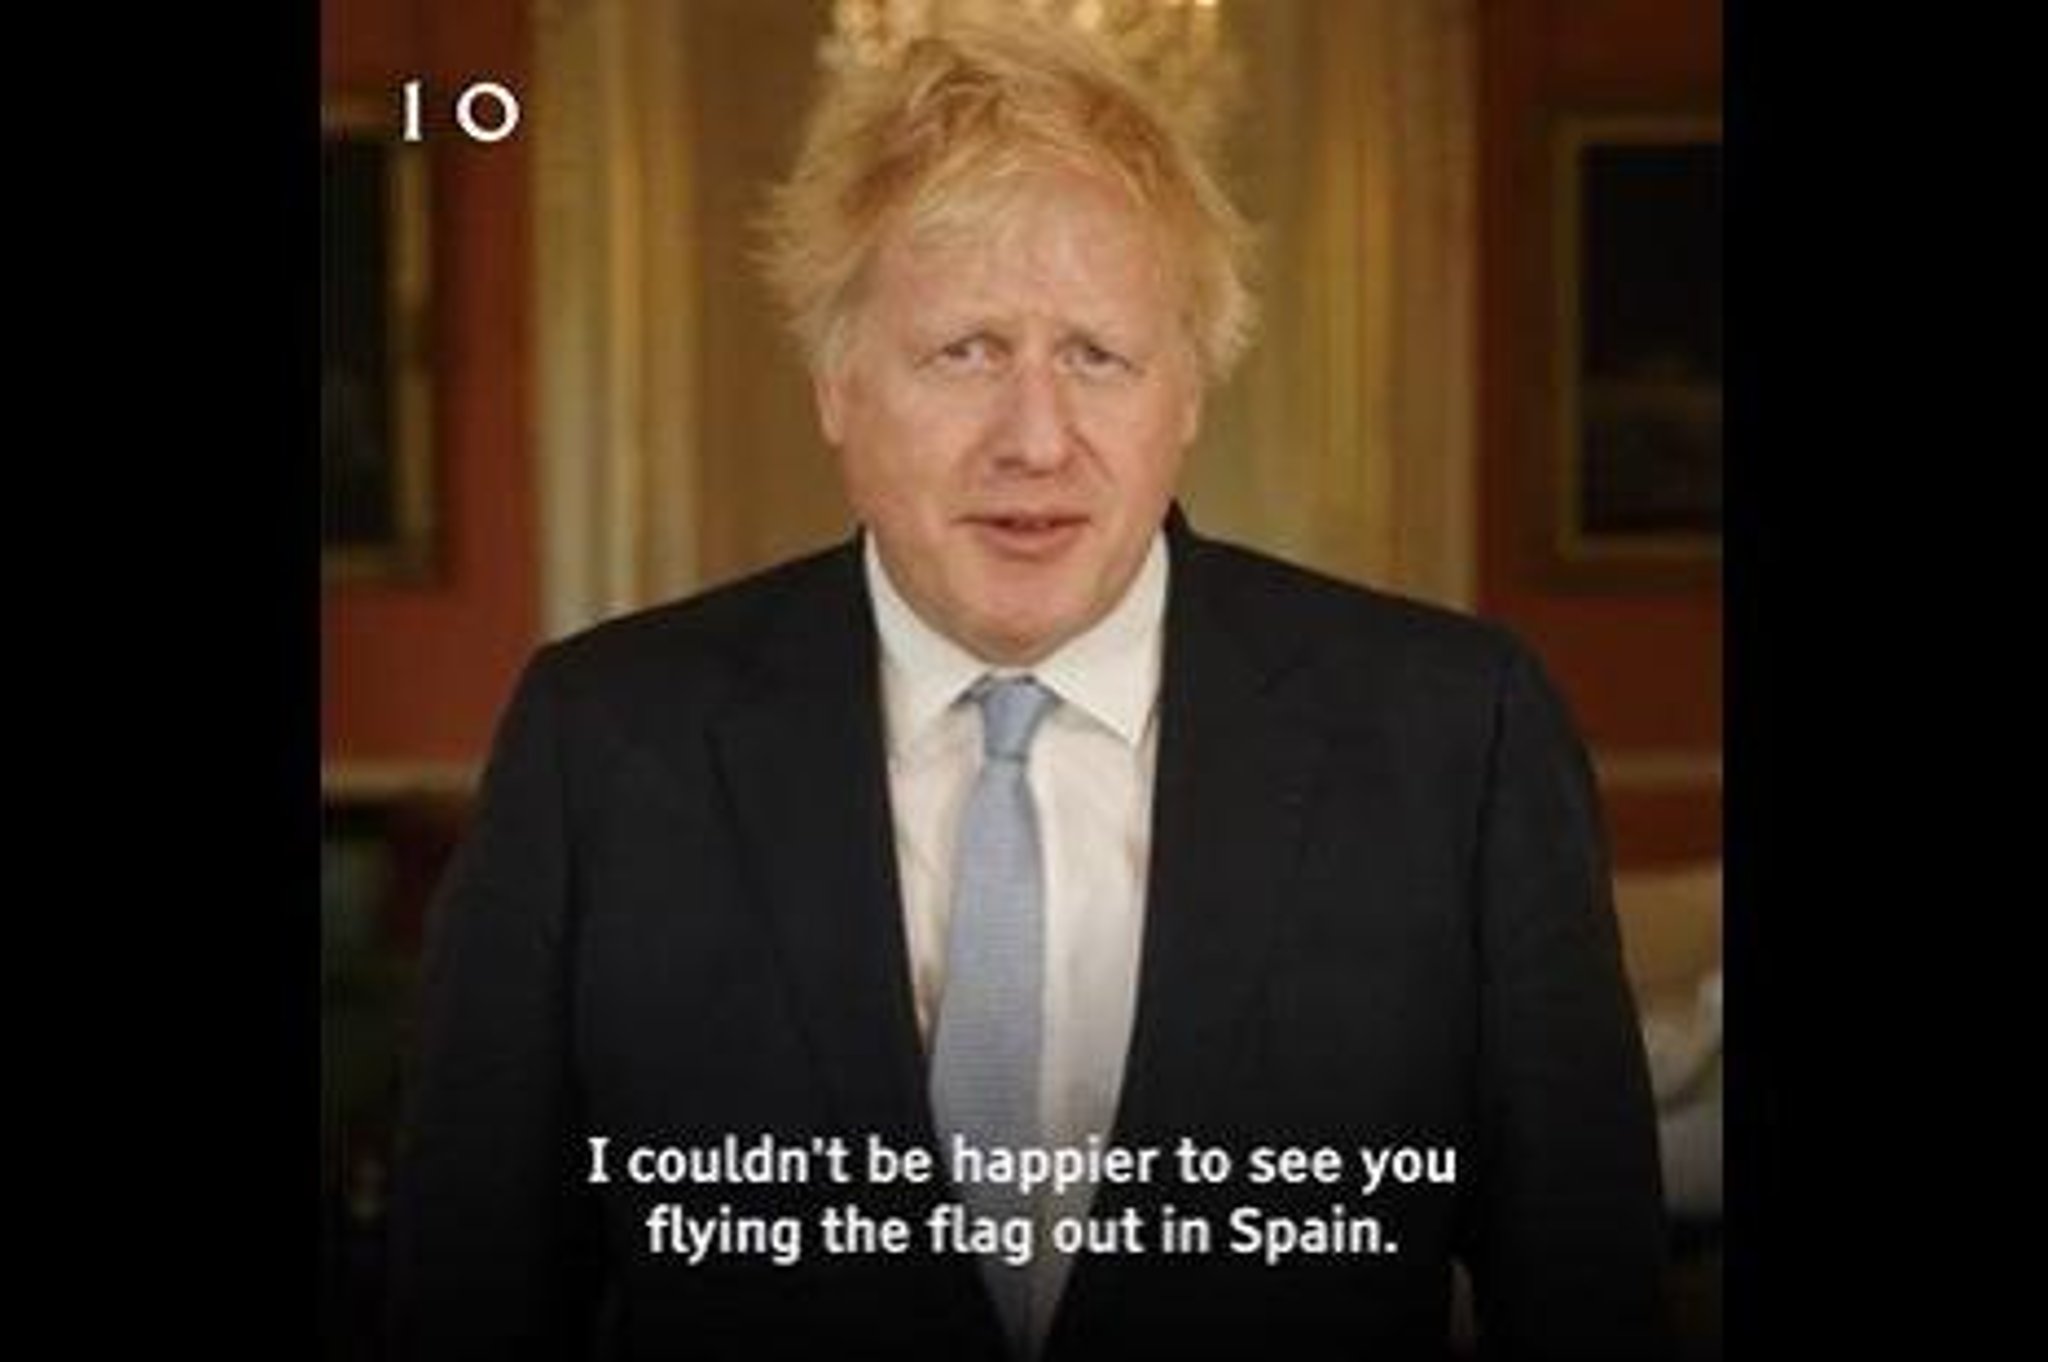 Watch as Boris Johnson praises Rangers for 'flying the flag' in Seville